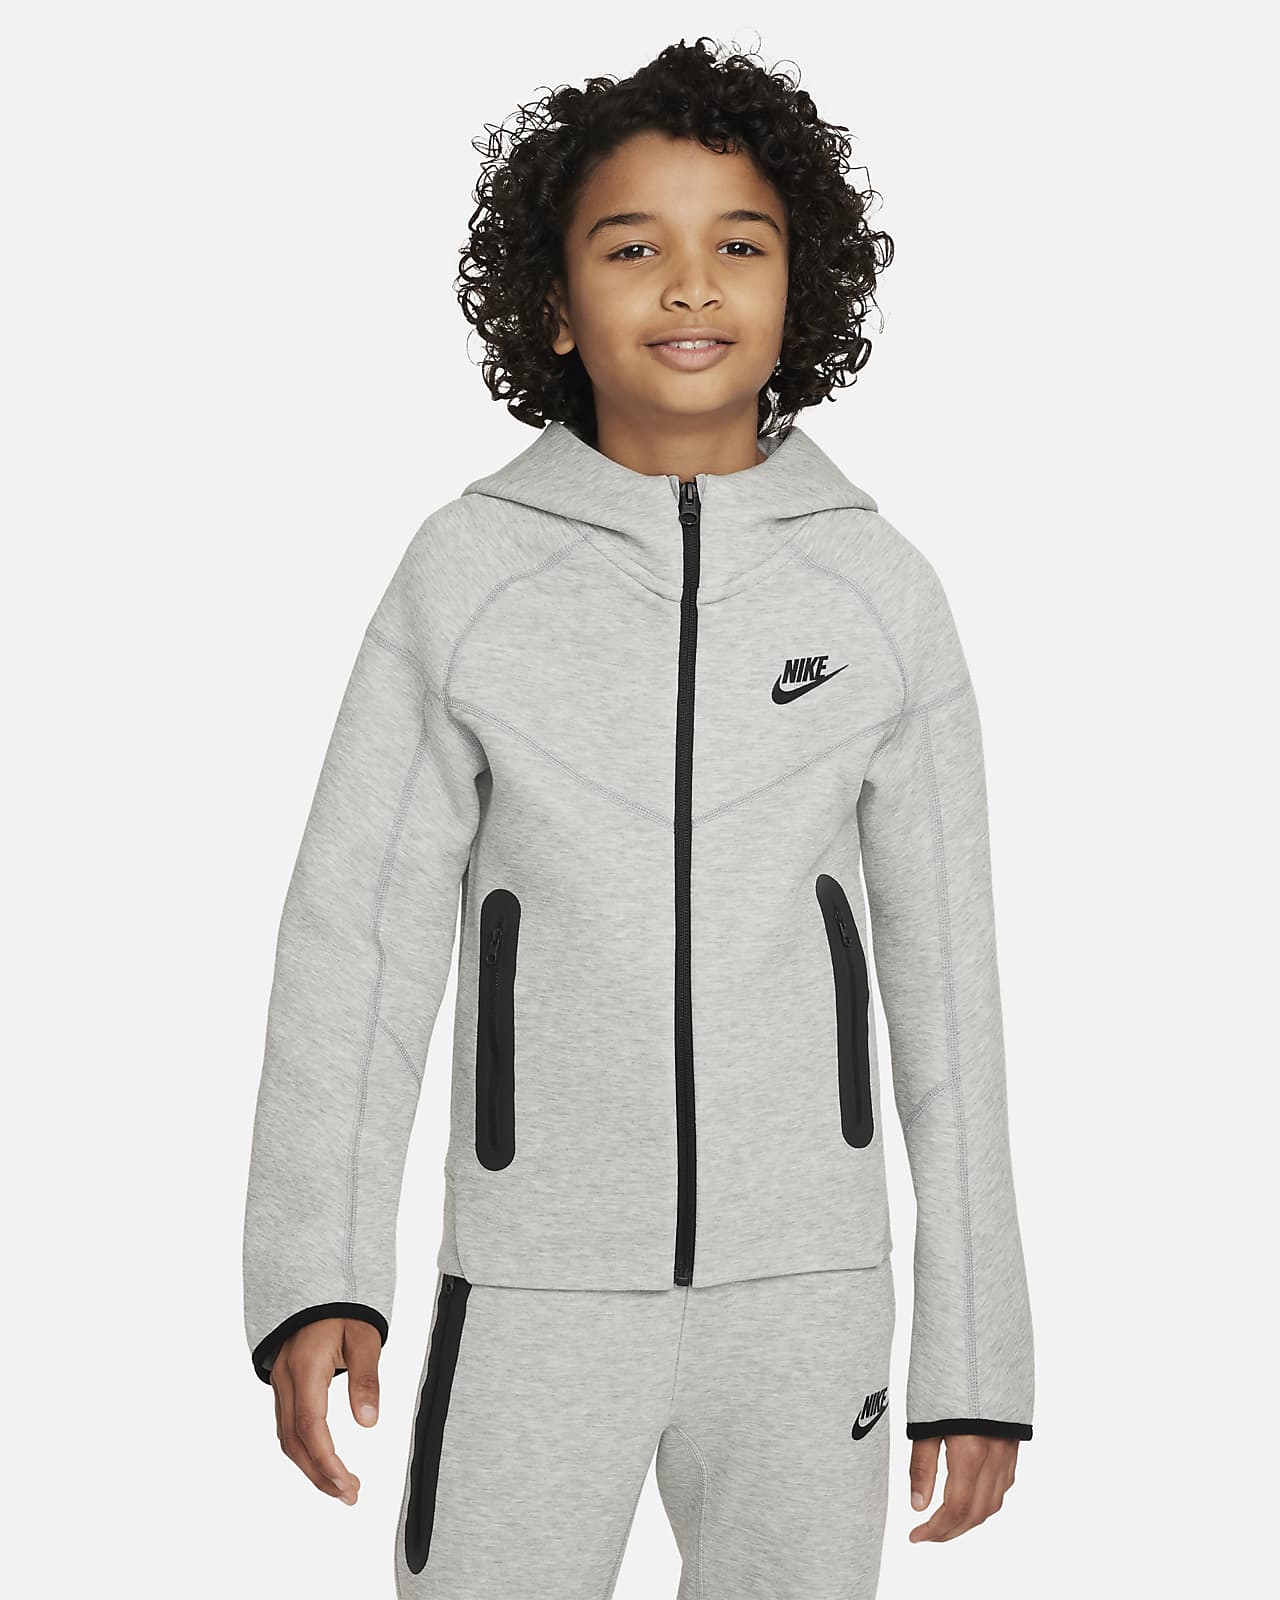 Verbeelding Aangenaam kennis te maken overschot Nike Sportswear Tech Fleece Big Kids' (Boys') Full-Zip Hoodie. Nike.com